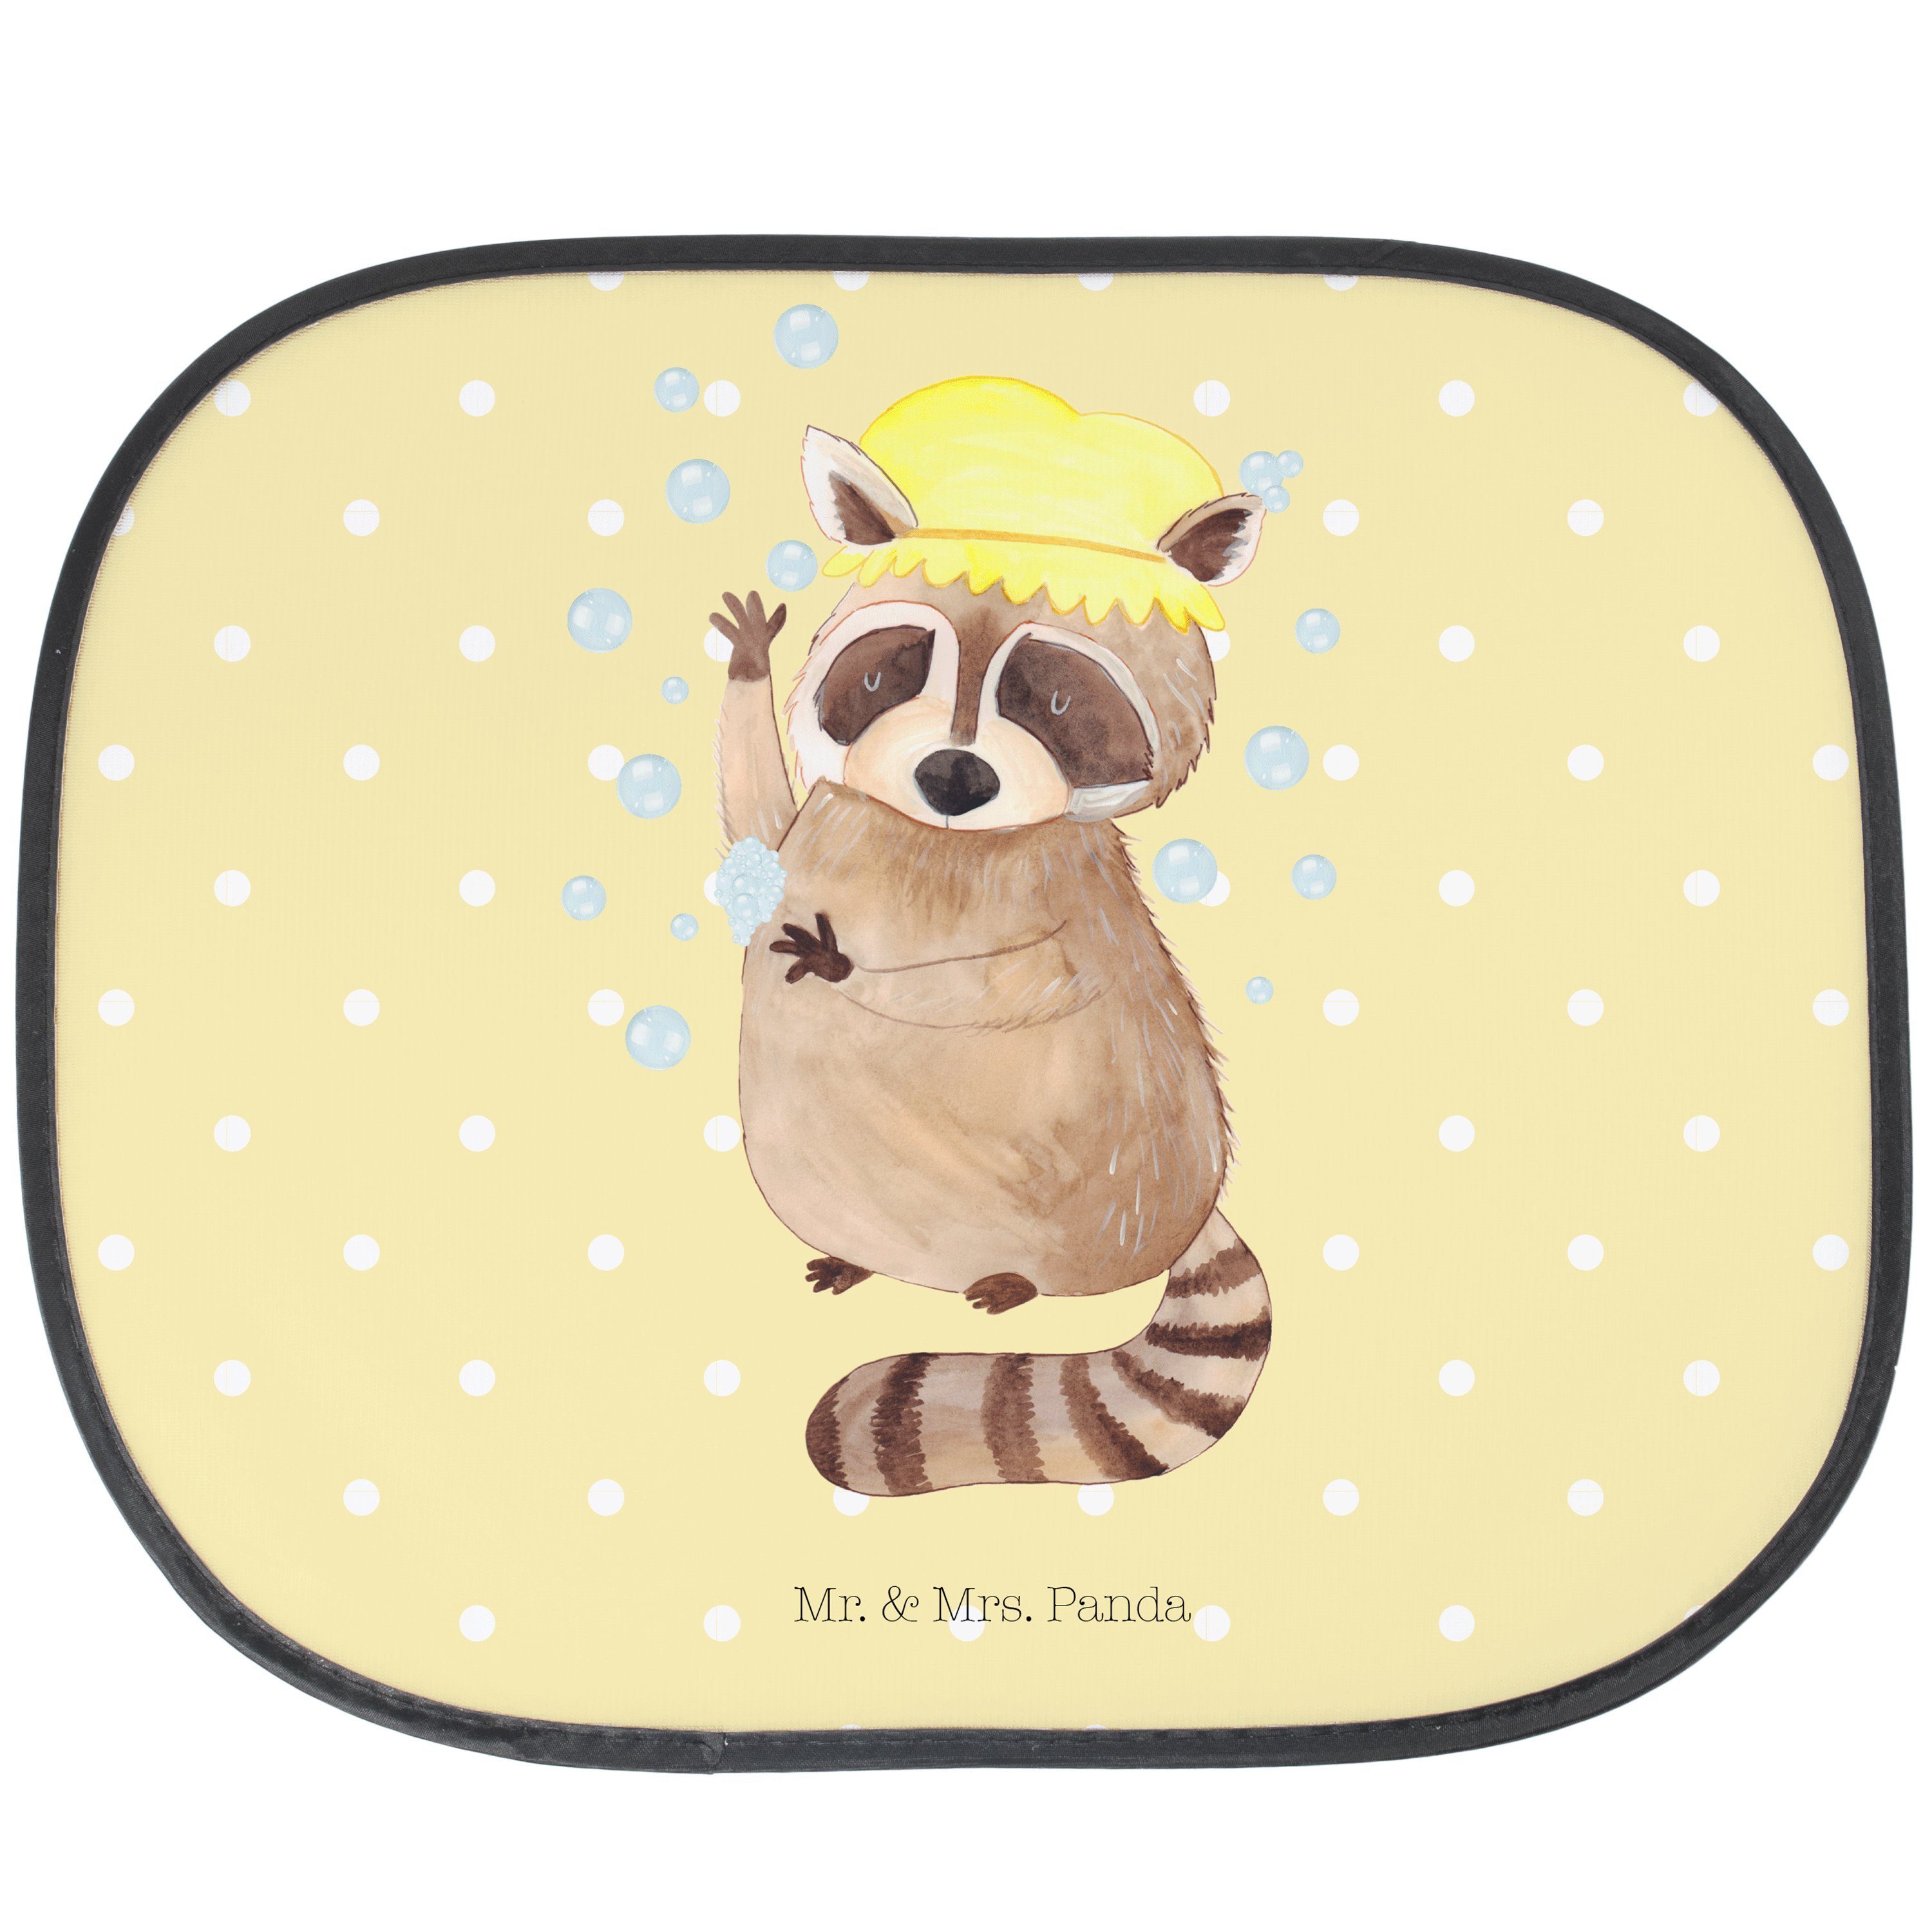 Sonnenschutz Waschbär - Gelb Pastell - Geschenk, Gute Laune, lustige Sprüche, Tier, Mr. & Mrs. Panda, Seidenmatt